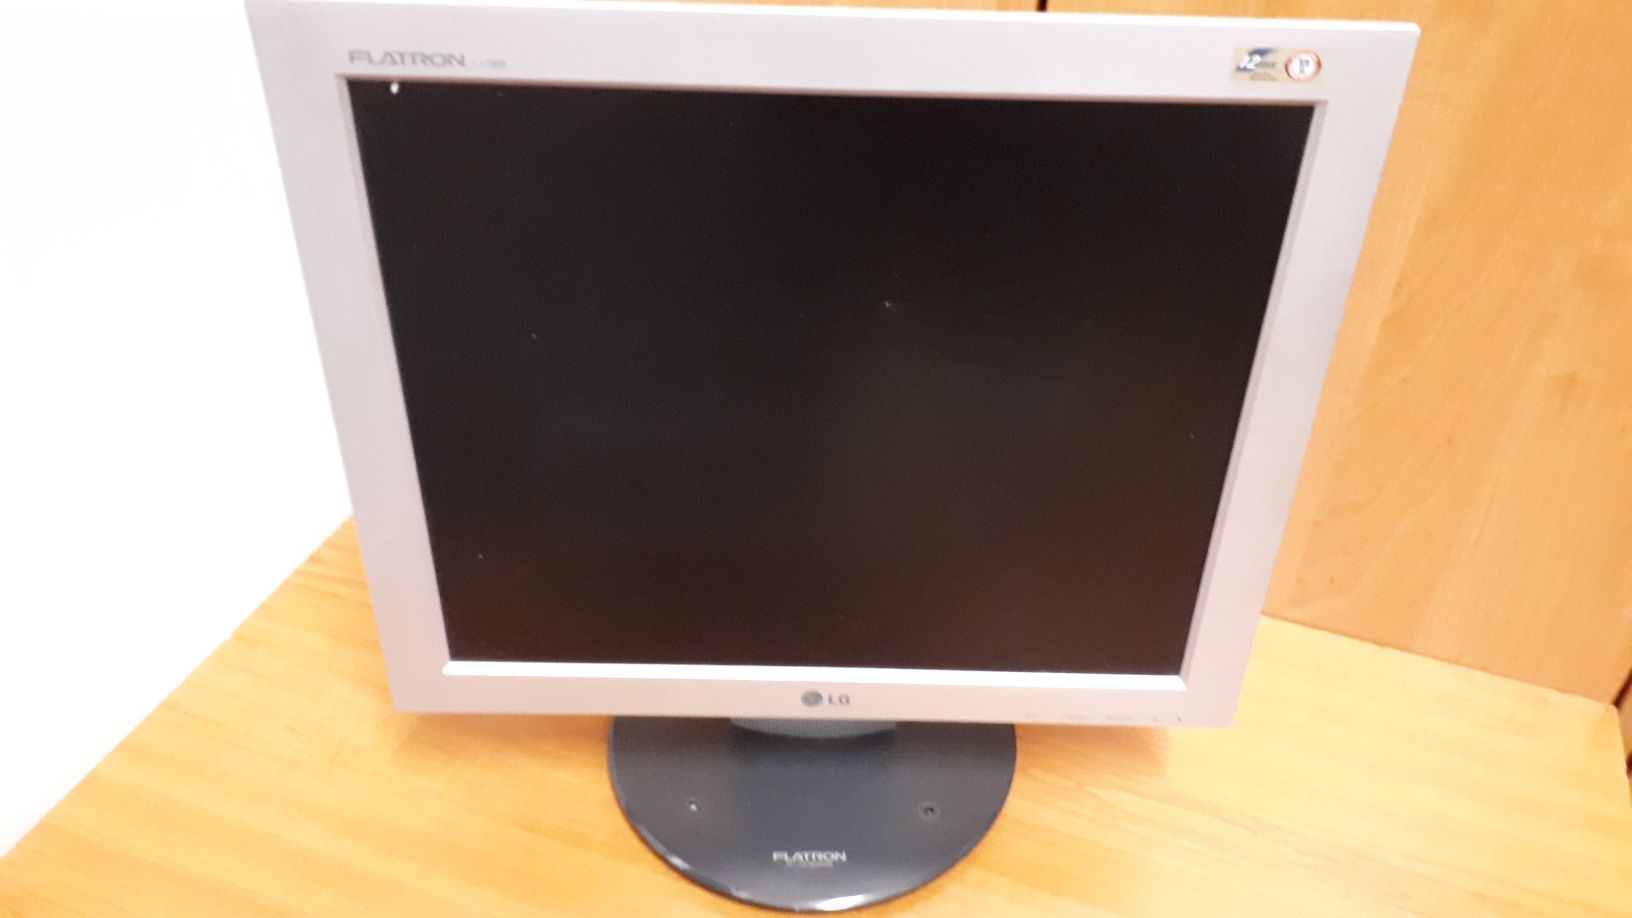 Monitor komputerowy Philips 15 cali